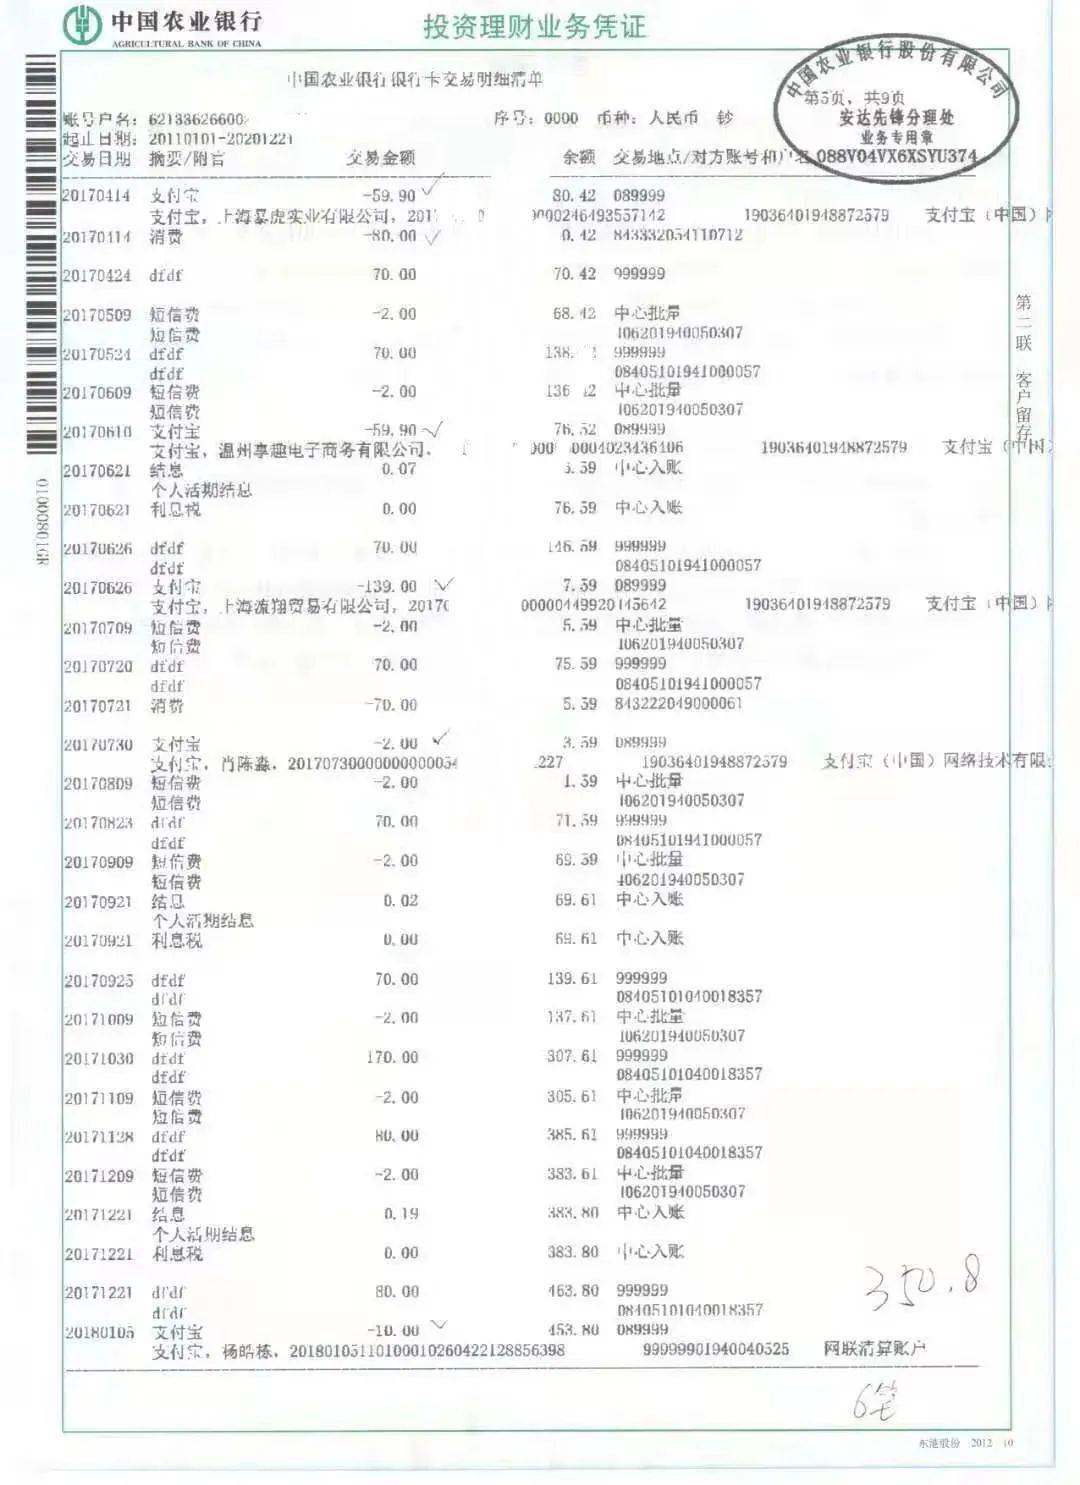 一张母亲名字,尾号为5019的中国农业银行借记卡里出现58笔支付宝的